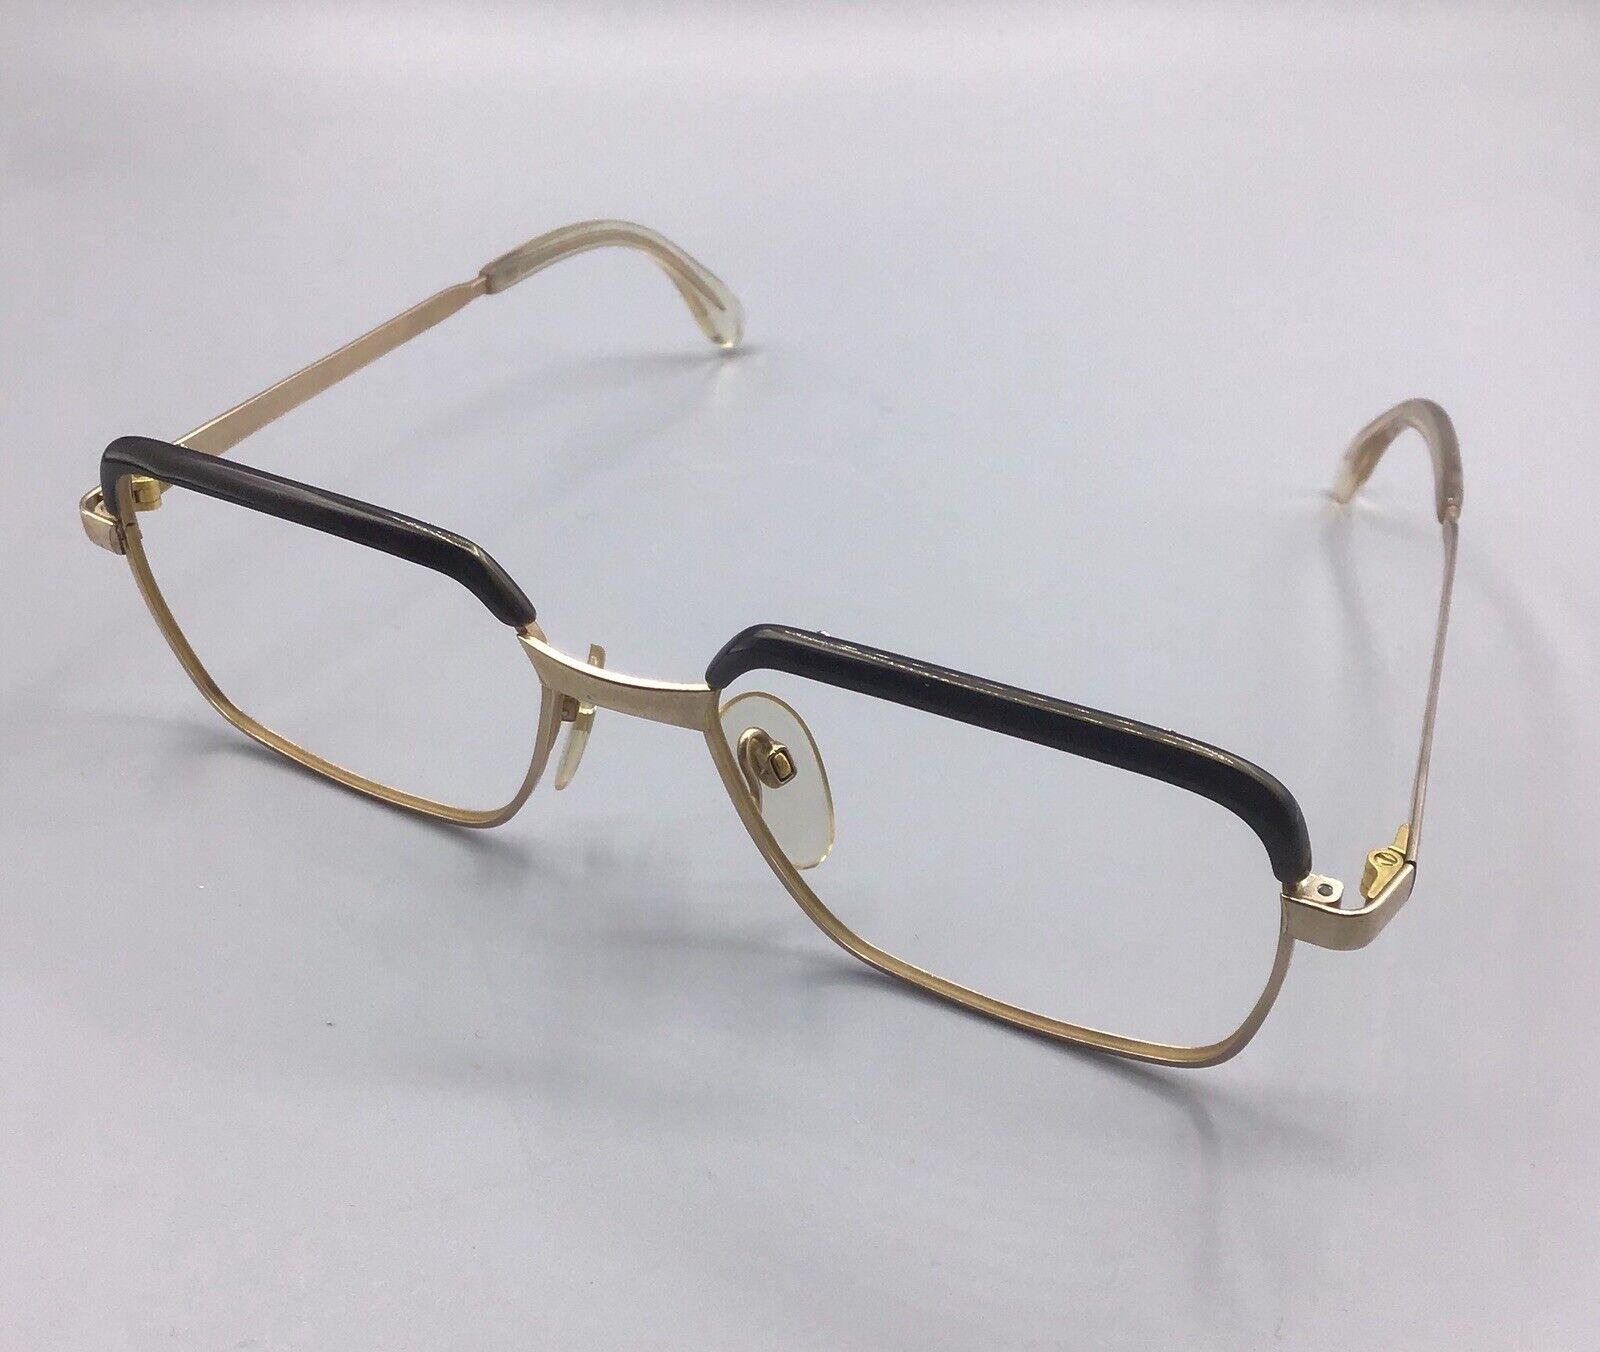 Rodenstock occhiale vintage frame eyeglasses 1/10 12k correl brillen oro gold